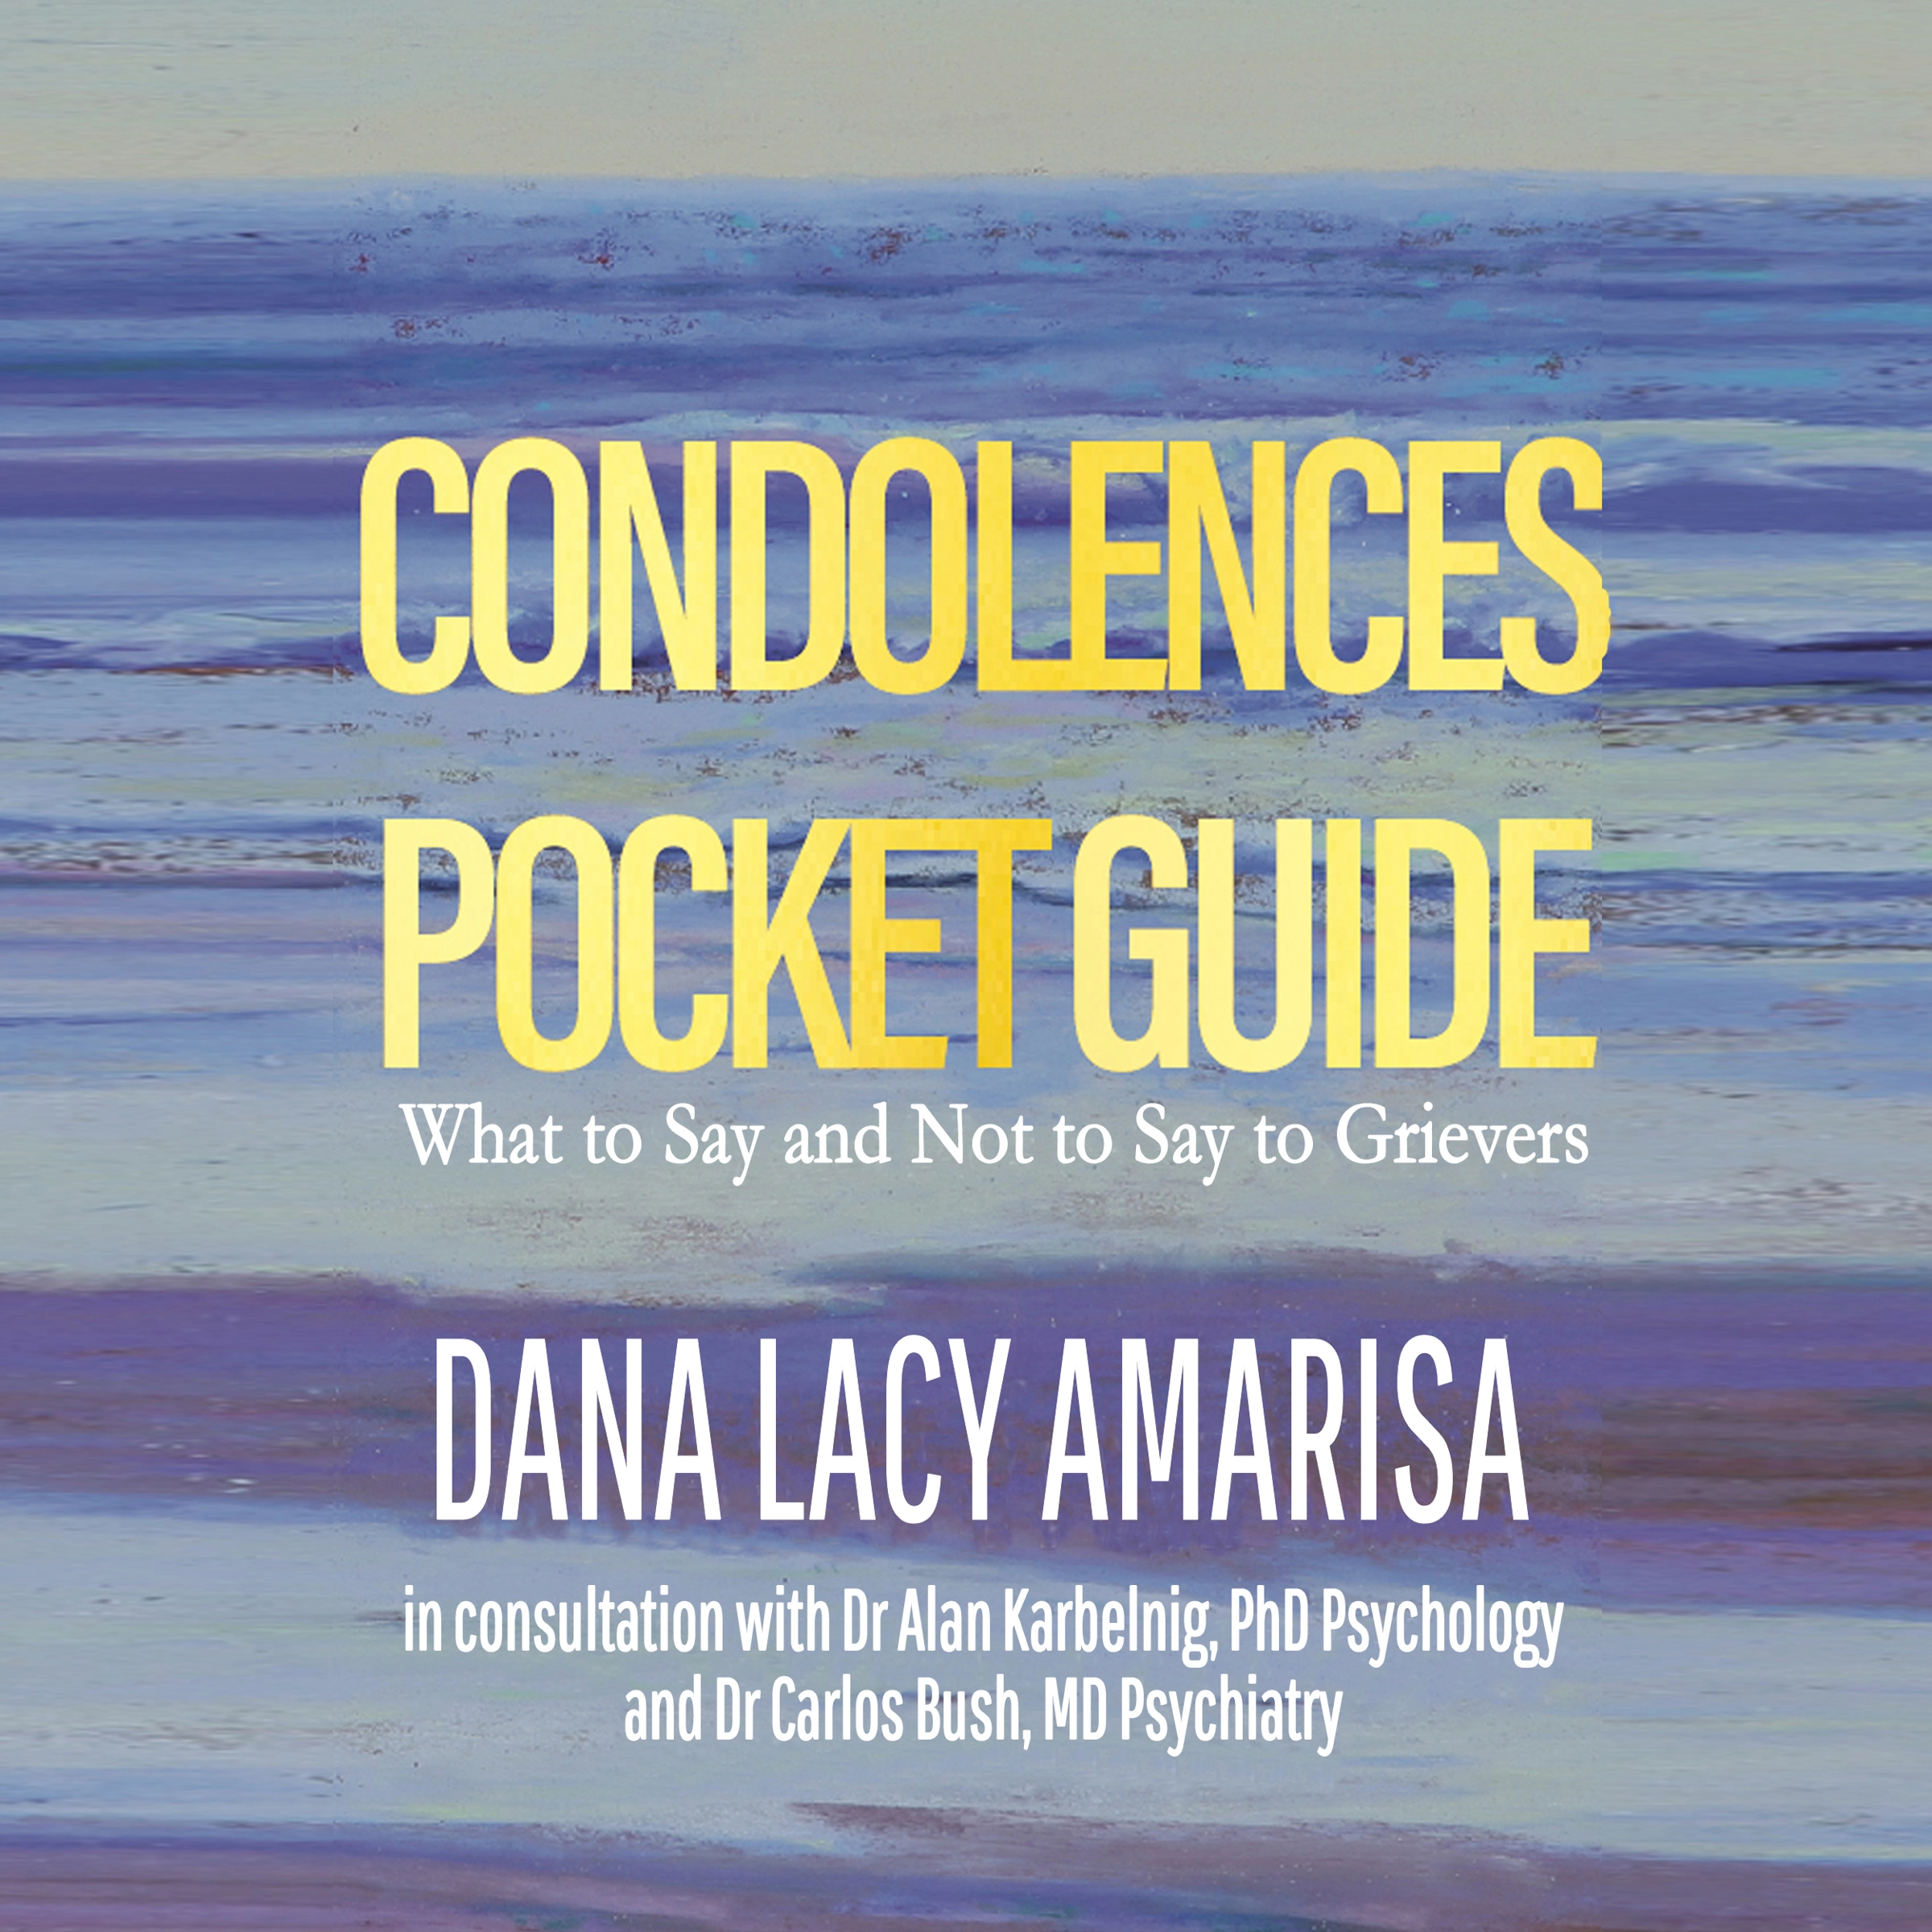 Condolences Pocket Guide by Dana Lacy Amarisa Audiobook